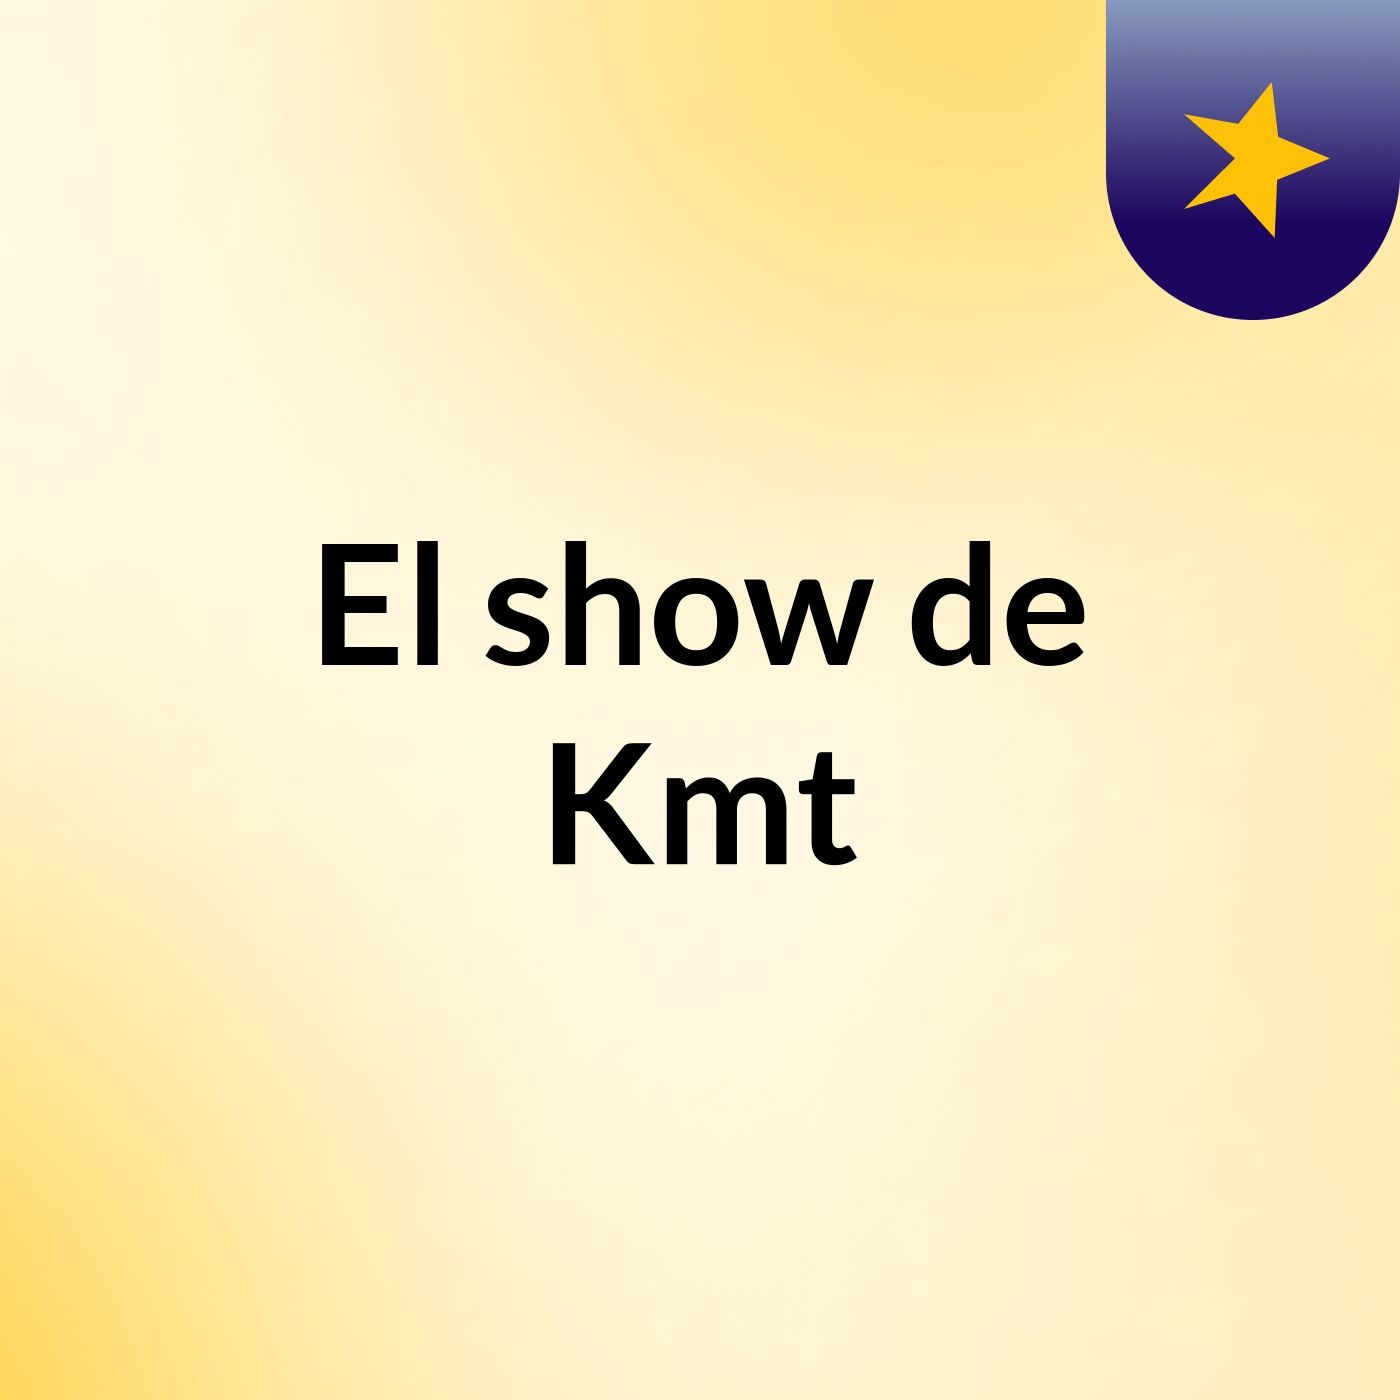 El show de Kmt